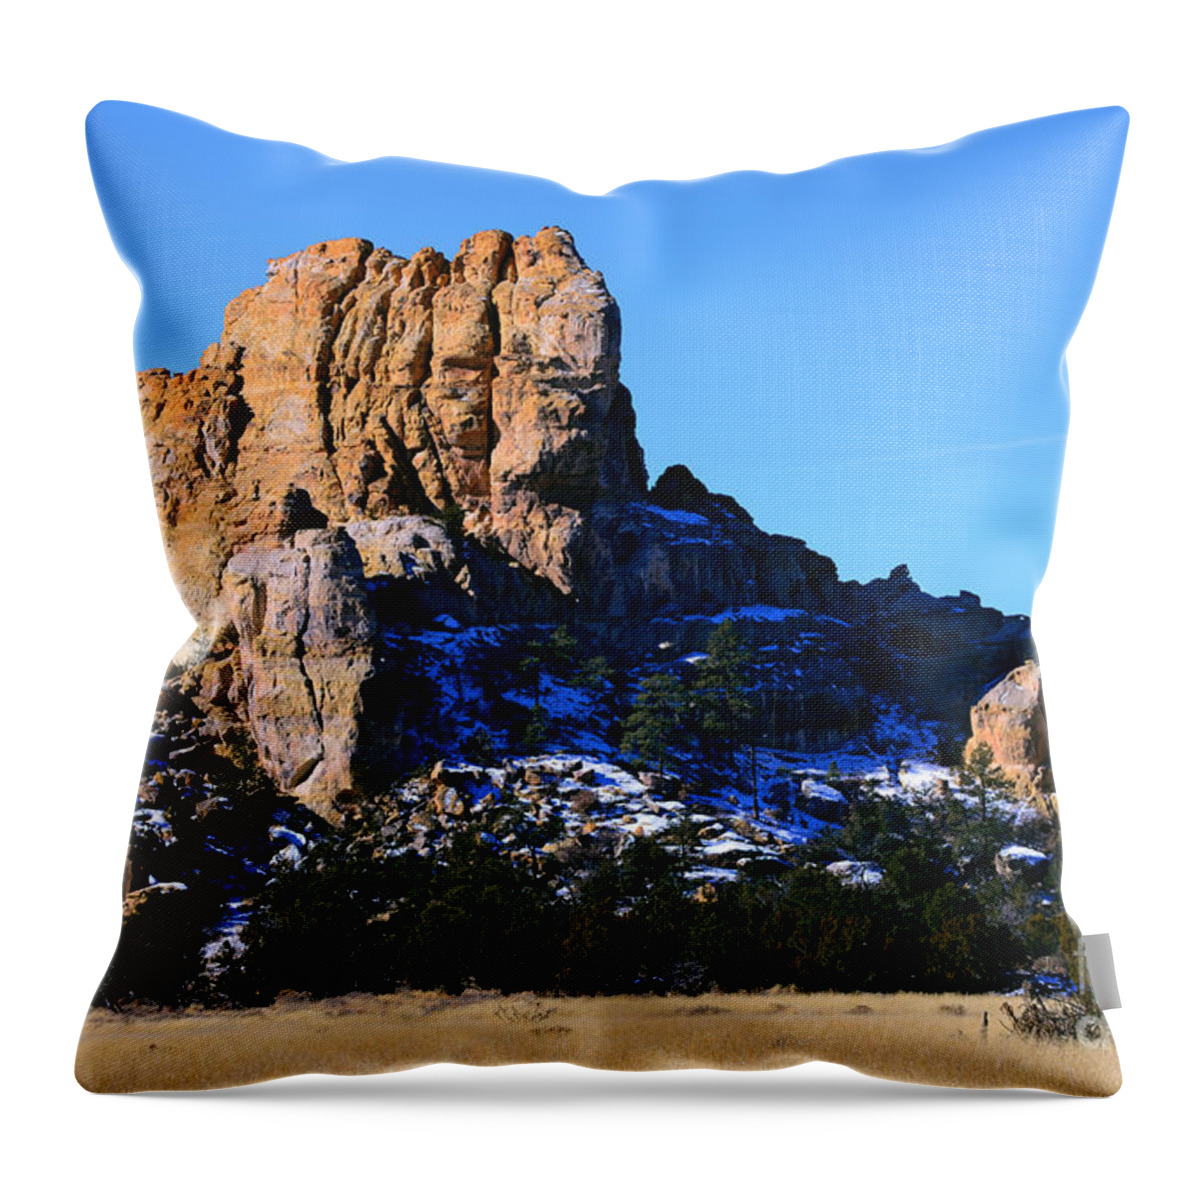 Southwest Landscape Throw Pillow featuring the photograph Cebollita bluff by Robert WK Clark